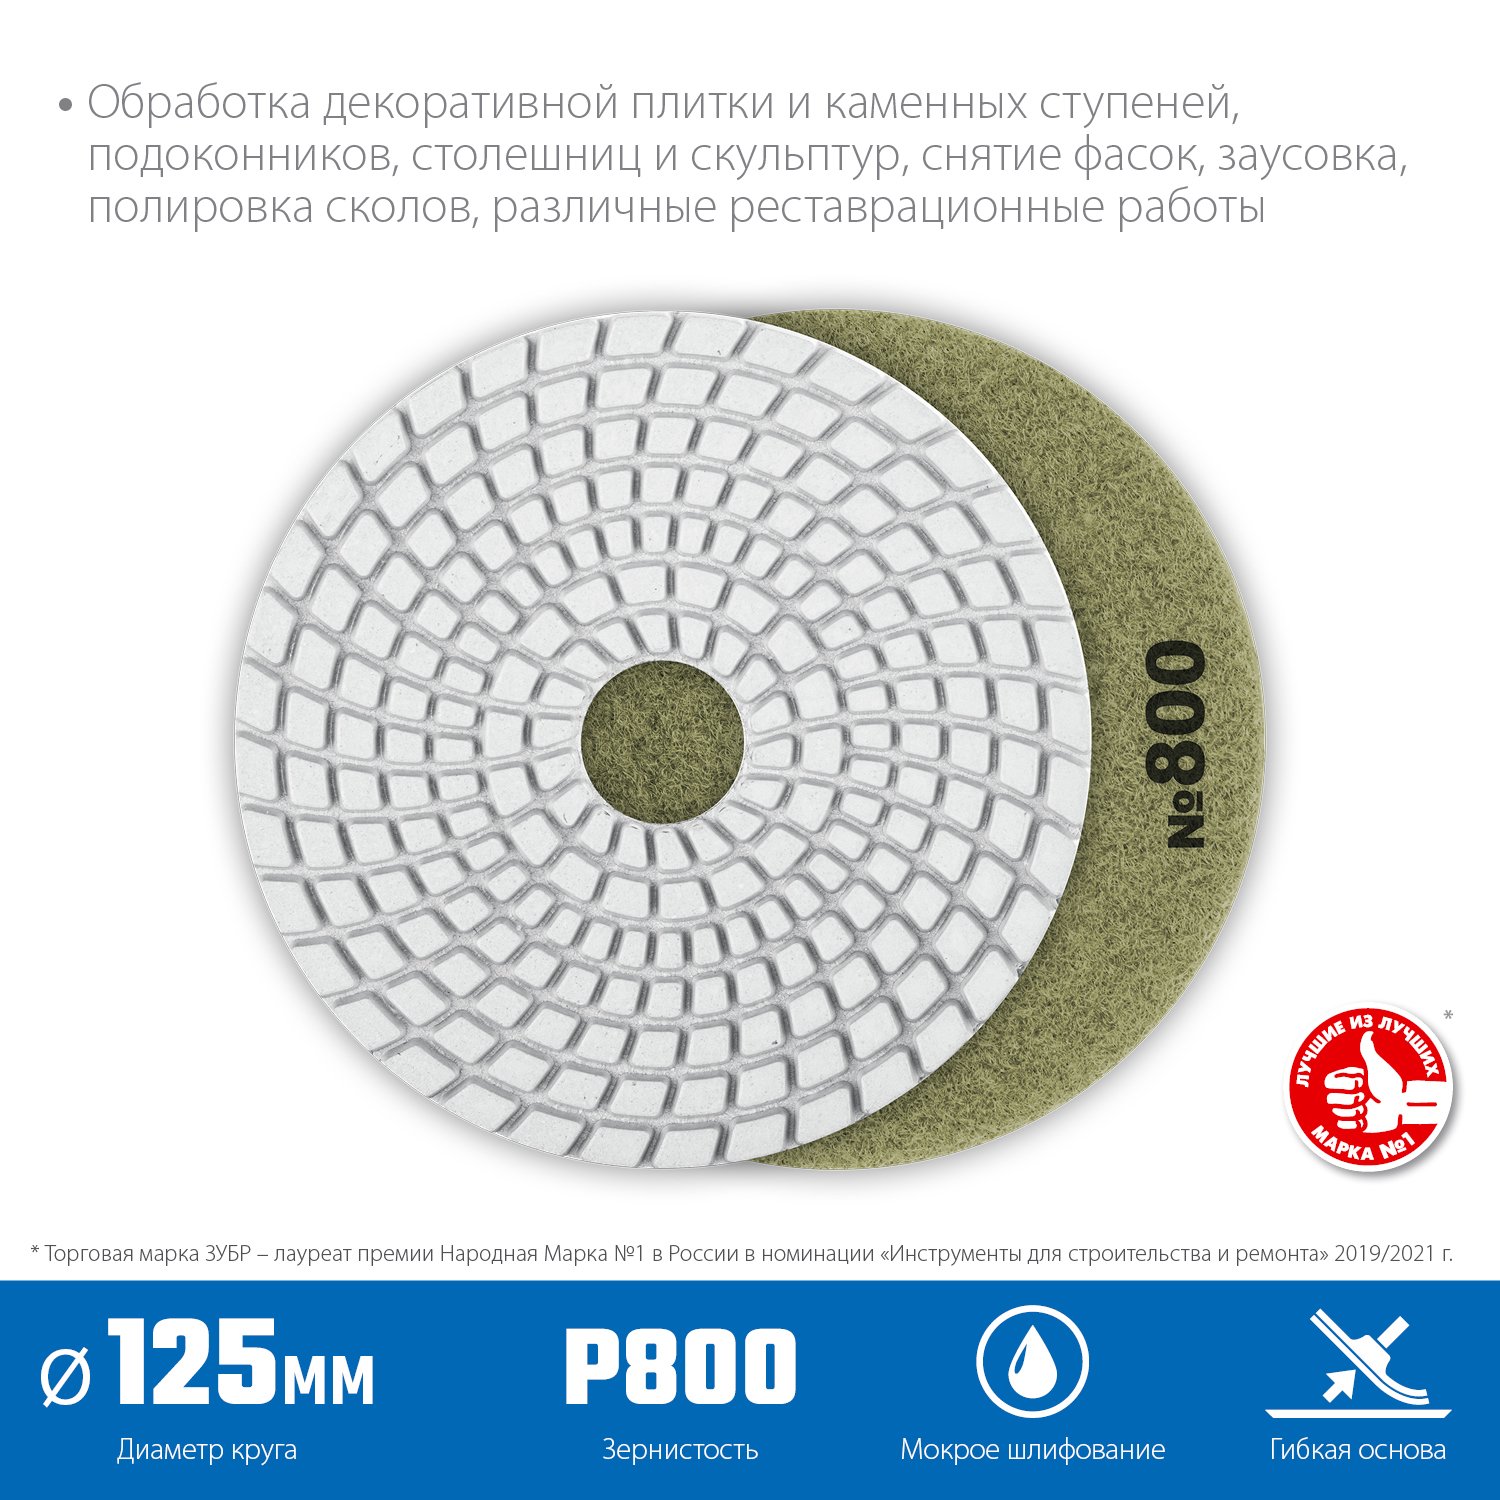 ЗУБР 125мм N800 алмазный гибкий шлифовальный круг (Черепашка) для мокрого шлифования (29867-800)